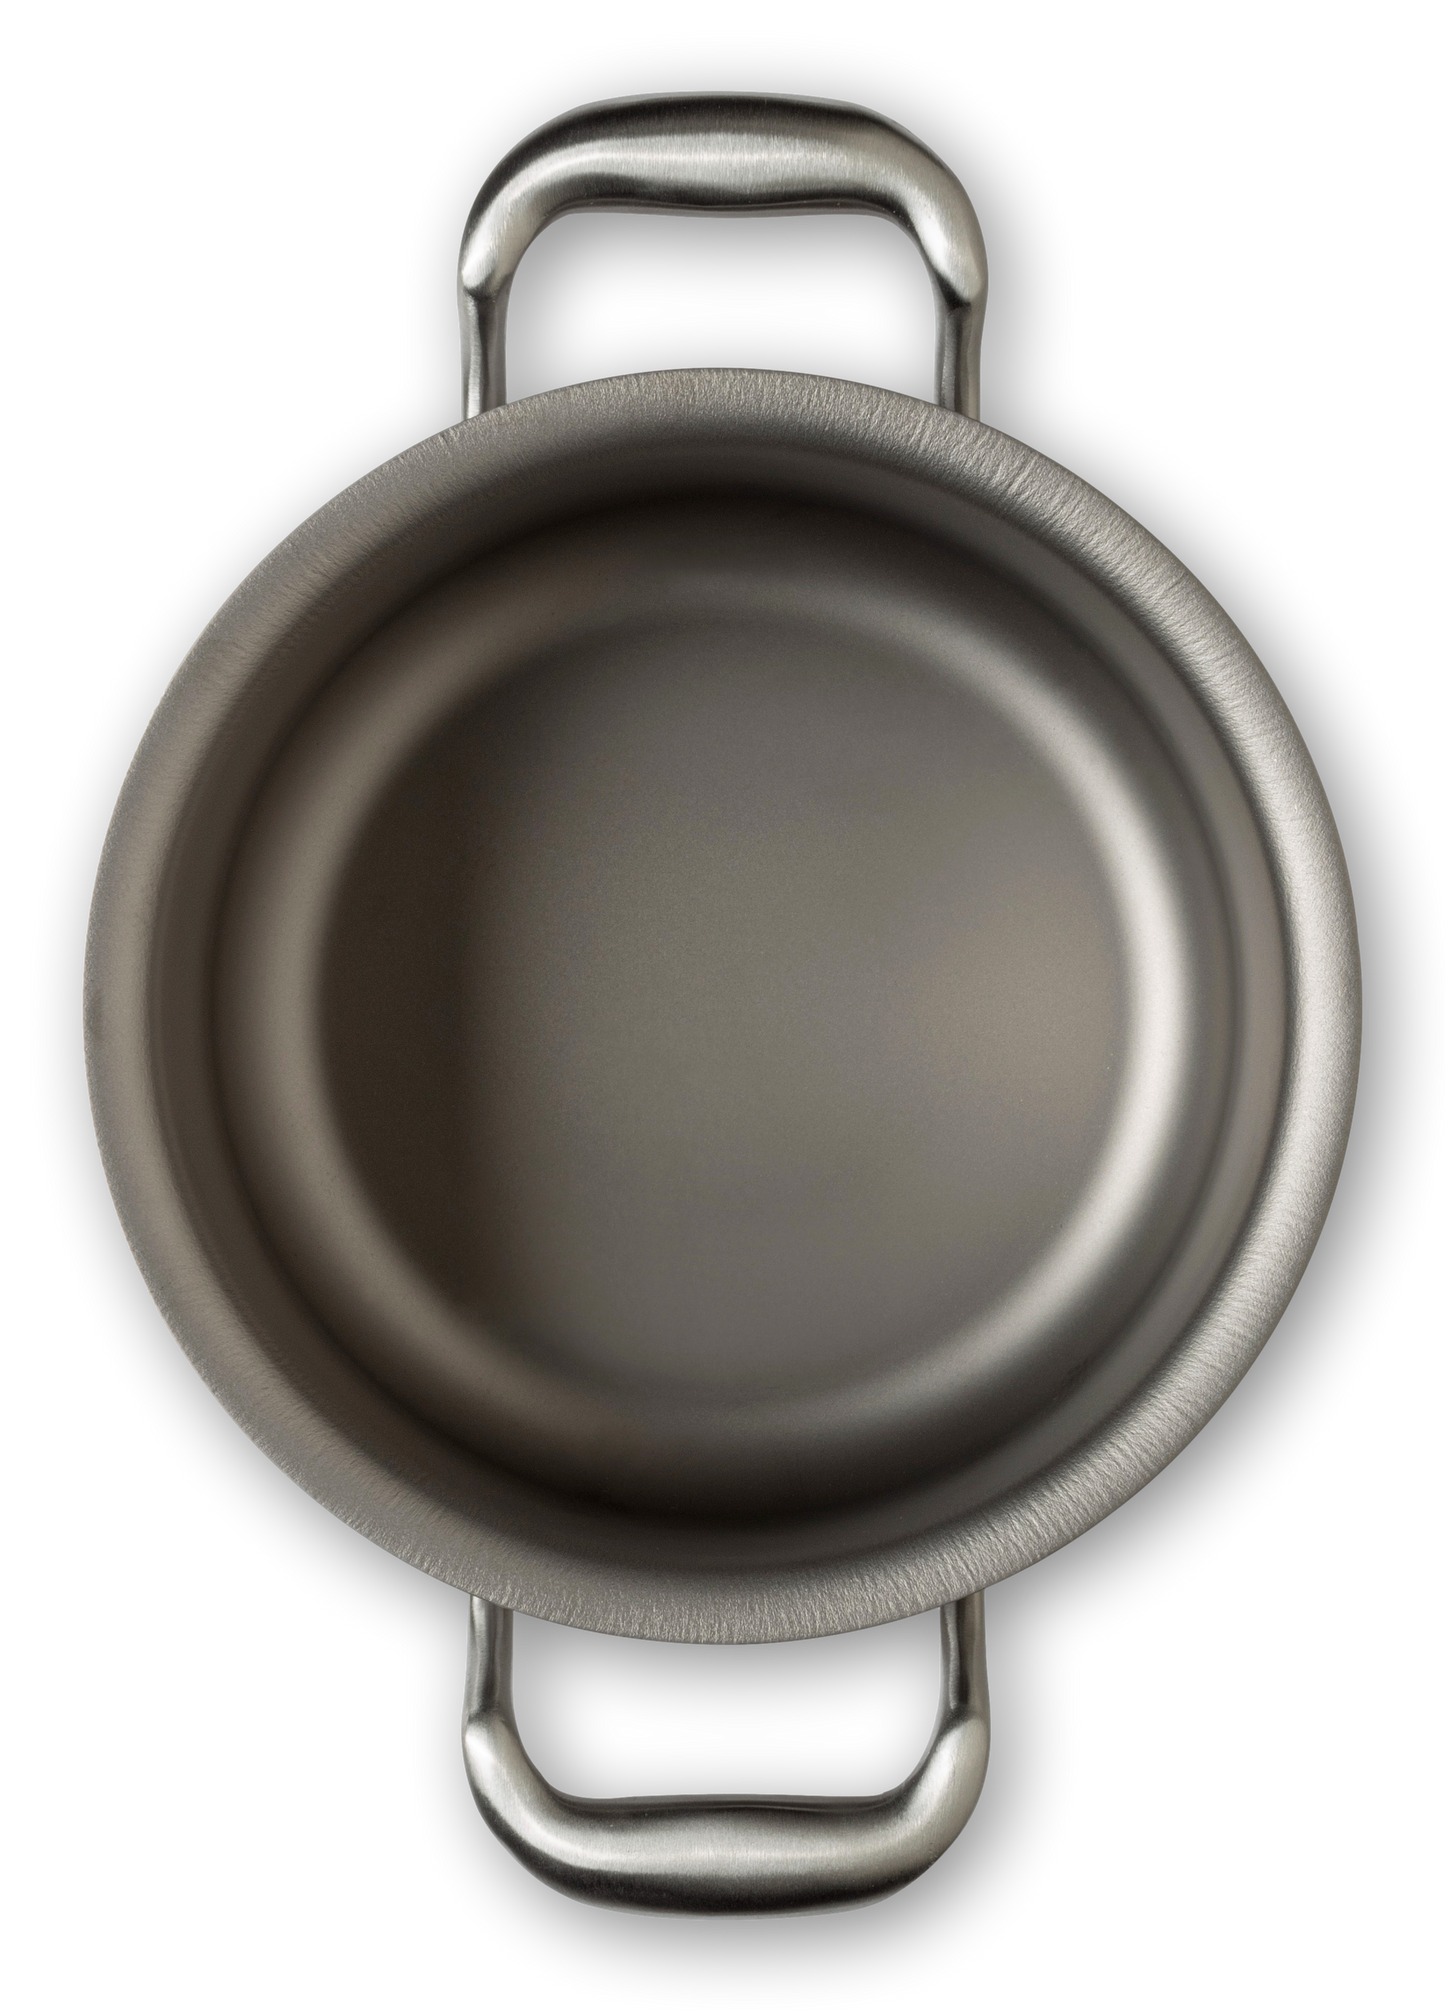  TECHEF - Colección Onyx - Olla de sopa de 2.8 cuartos con tapa  de vidrio, recubierta con nuevo revestimiento antiadherente de teflón  platino (sin PFOA) : Hogar y Cocina